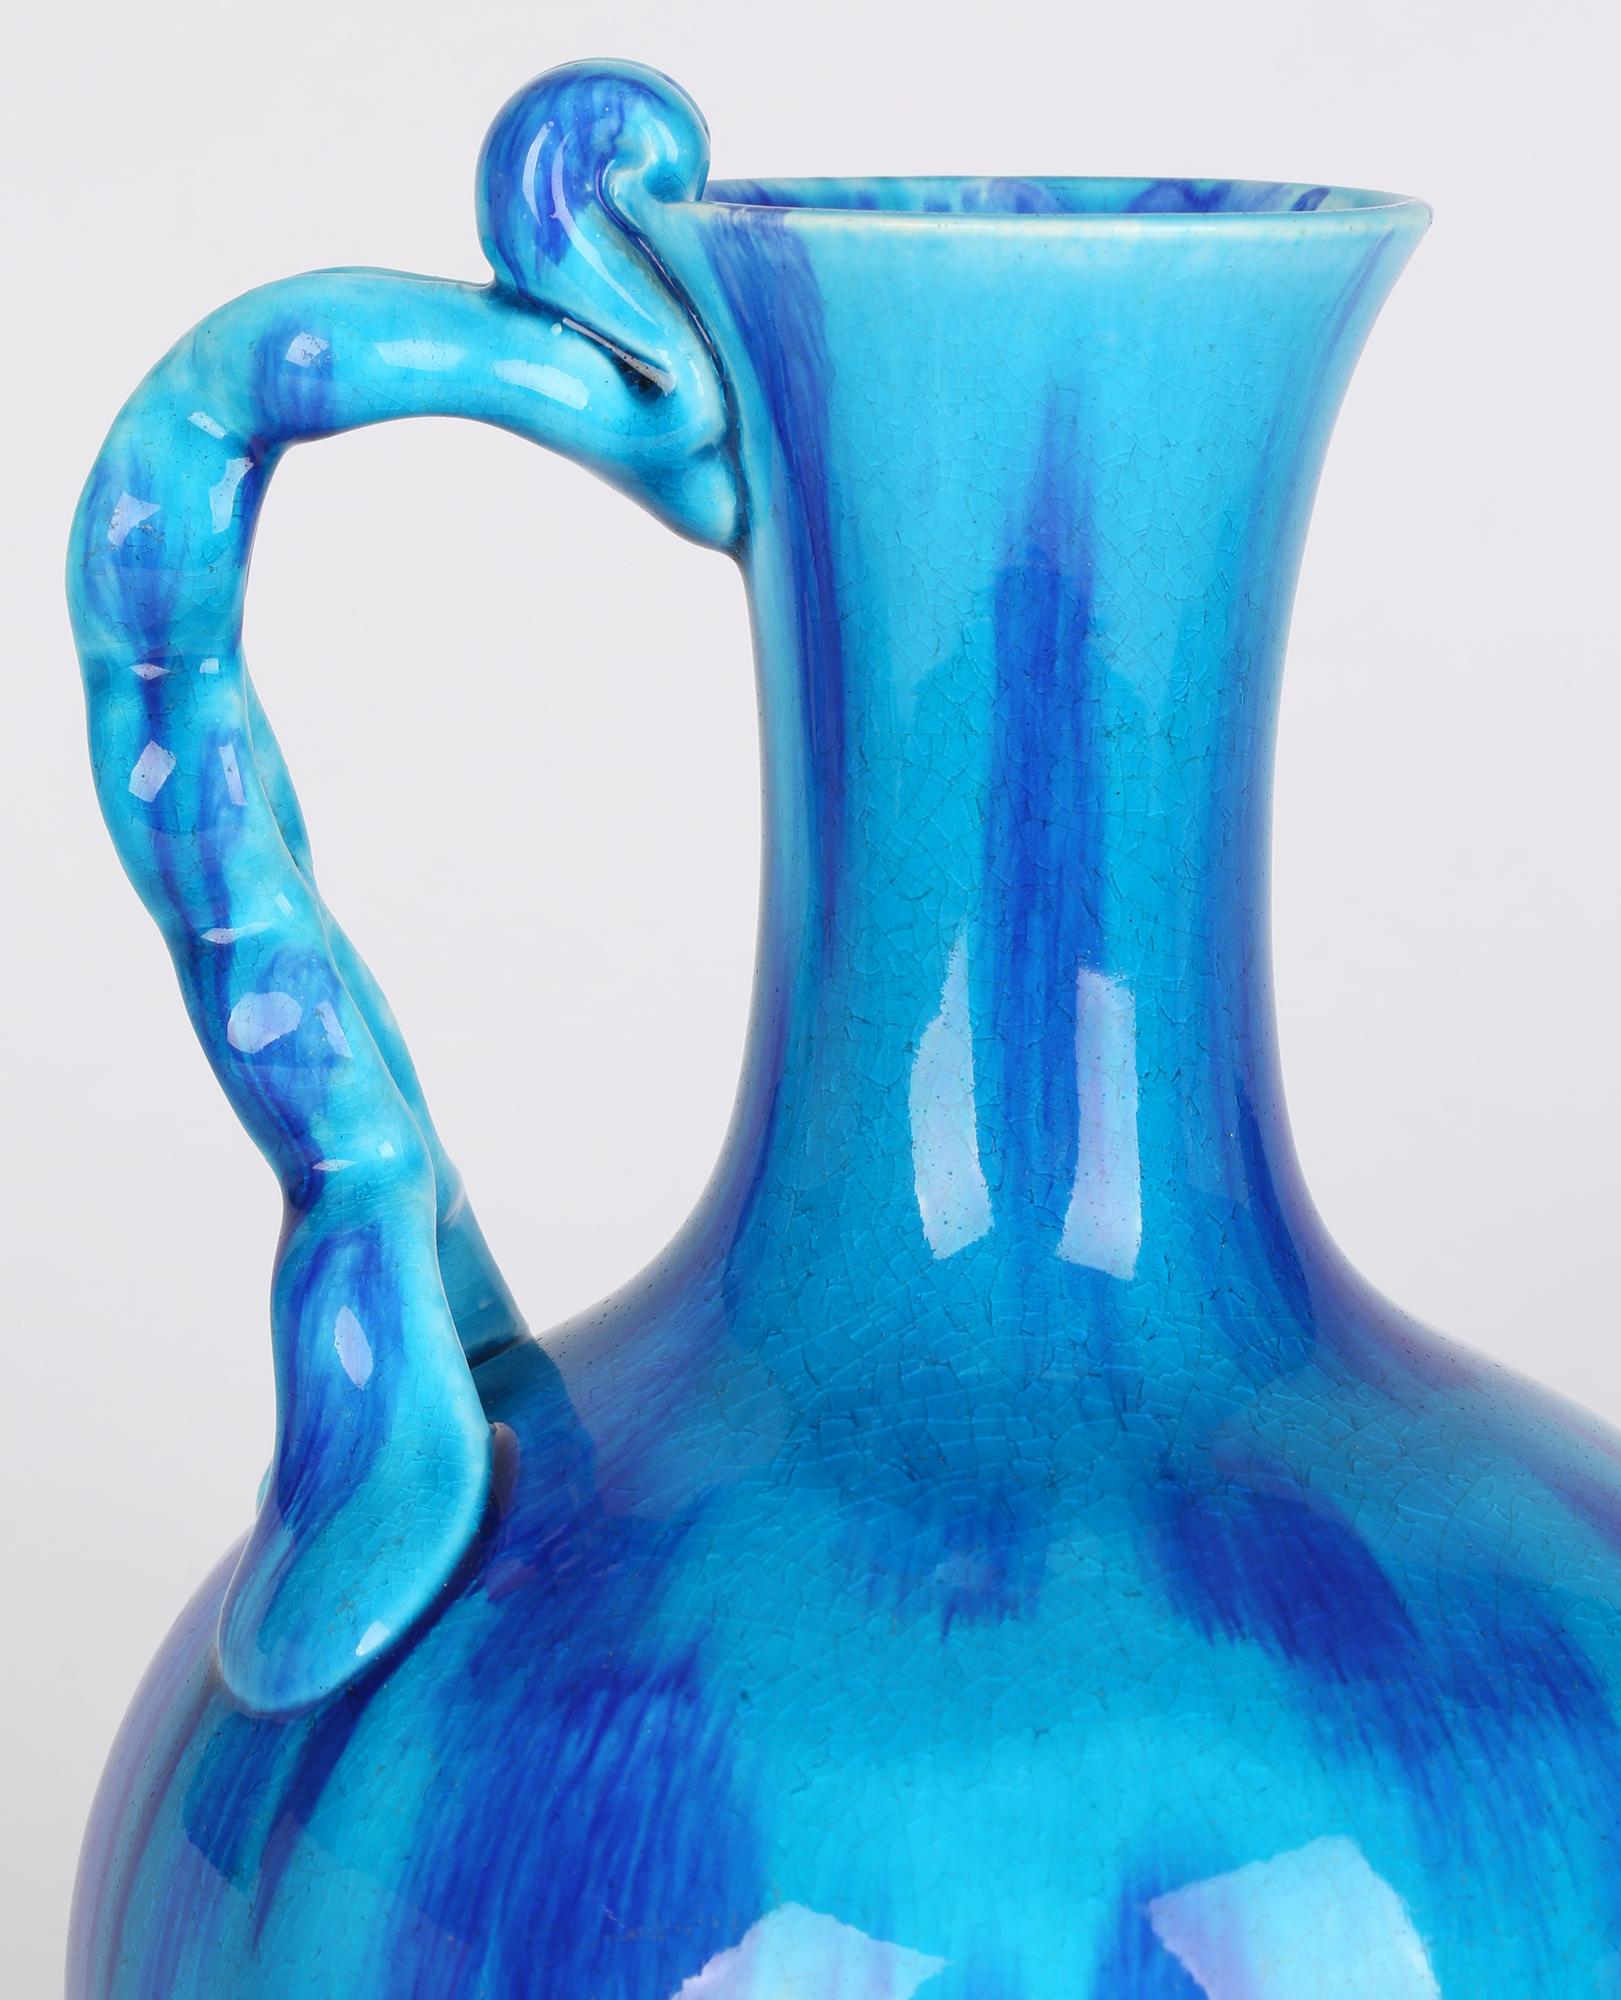 Minton Aesthetic Movement Blue & Turquoise Glazed Handled Art Pottery Vase 2